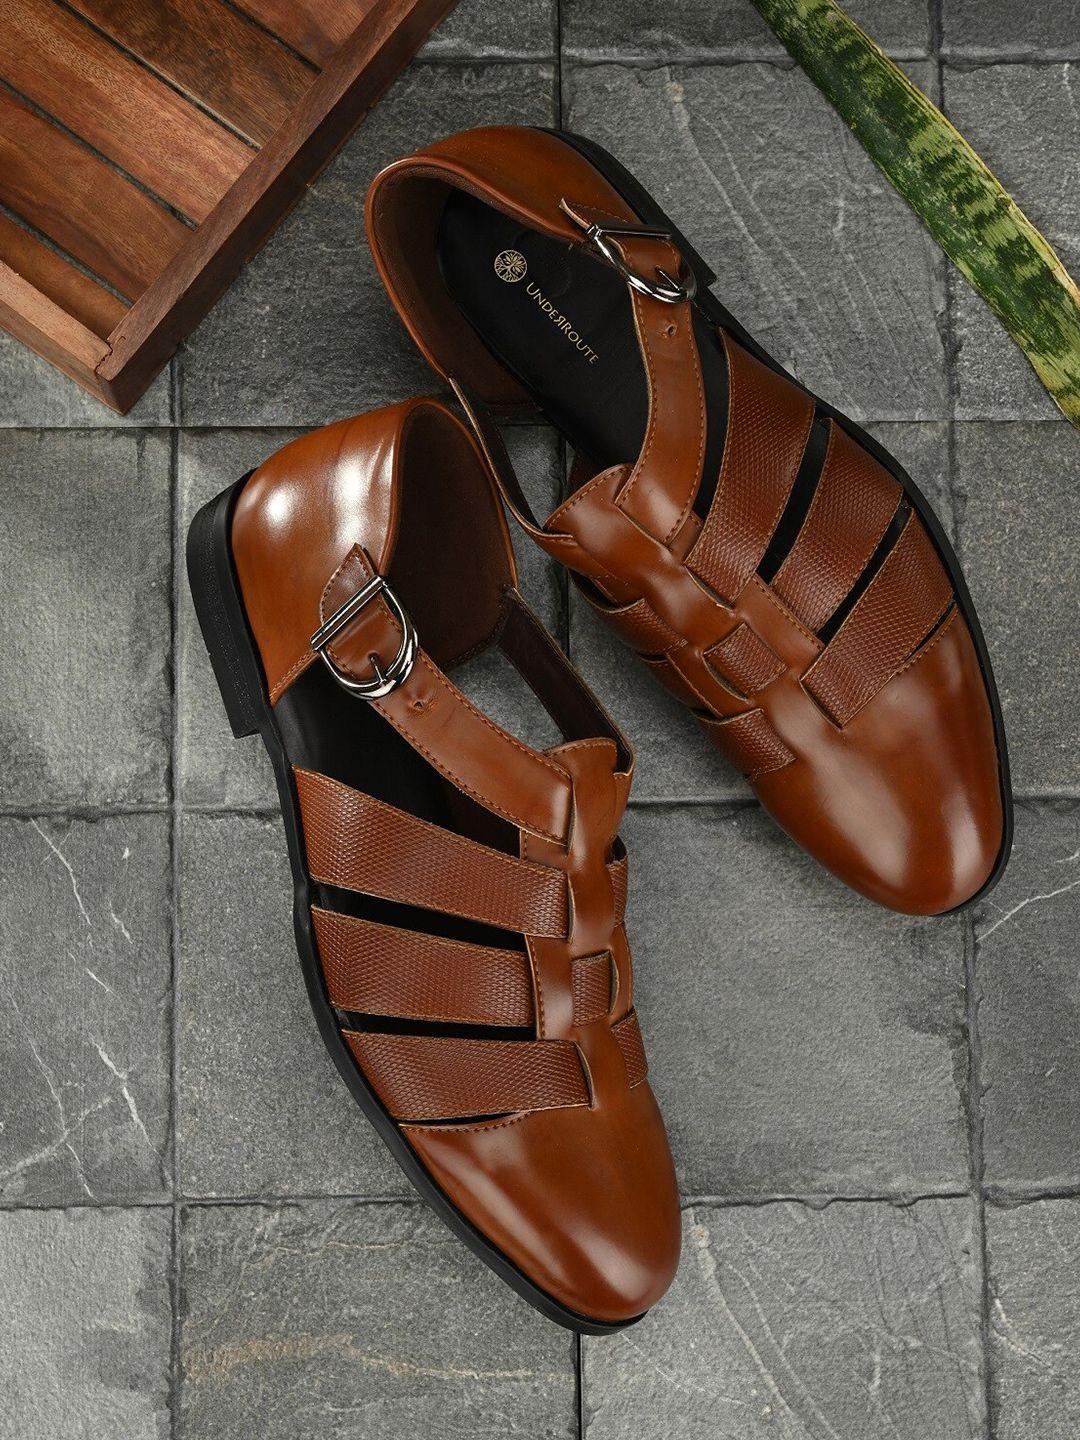 underroute-men-tan-brown-shoe-style-sandals